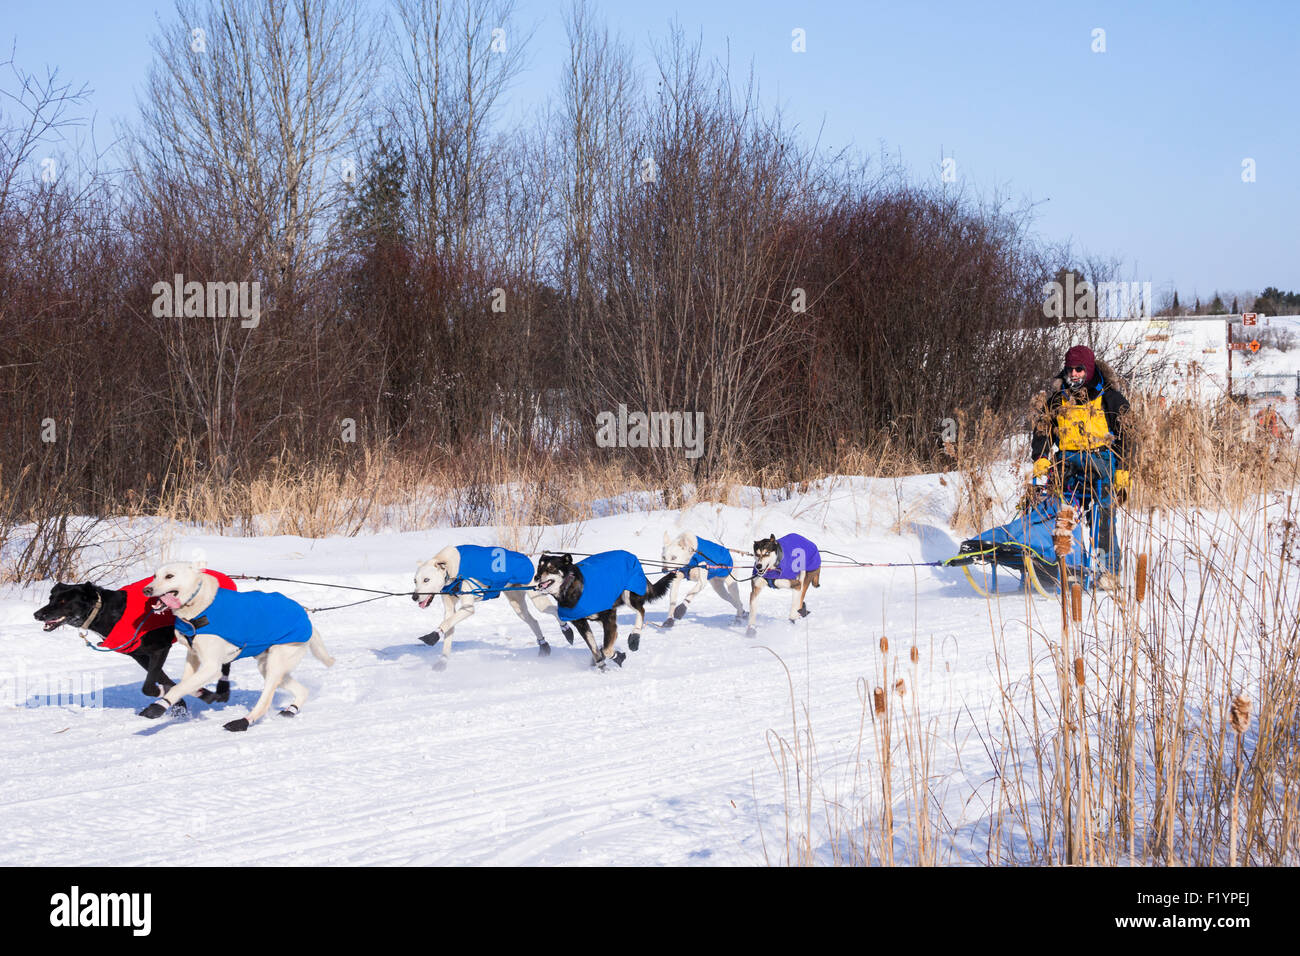 Mâle adulte musher dirige une équipe de chiens husky sur le loup annuel Track Classic course de chiens de traîneau la concurrence, Ely, MN, USA Banque D'Images